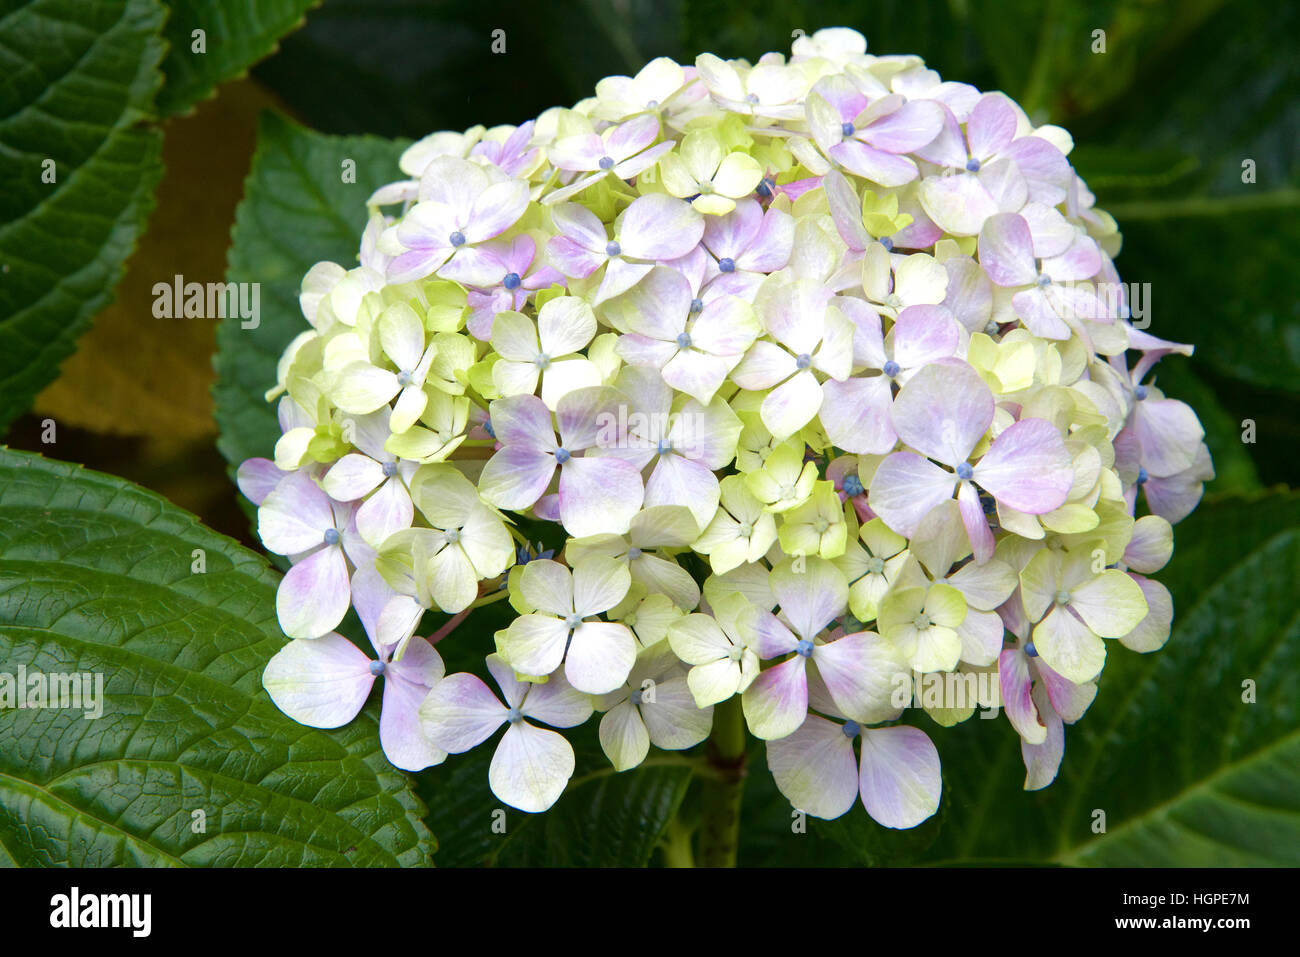 Purple Flowers Long Green Stems Stock Photo by ©sandipruel 233016818